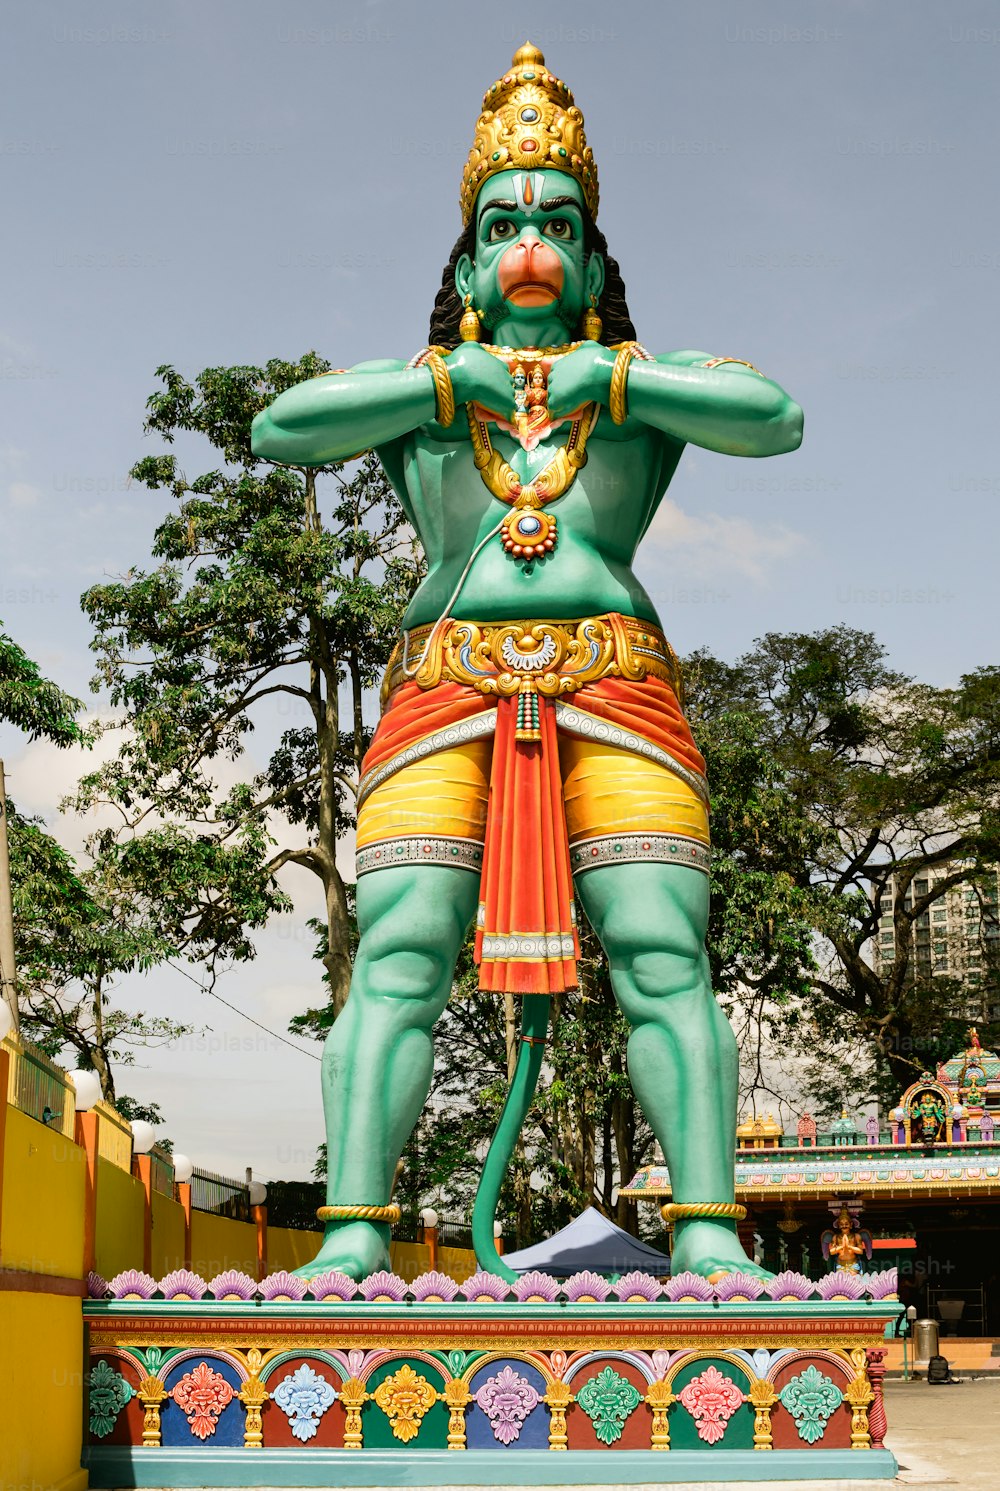 녹색 옷을 입은 남자의 큰 동상